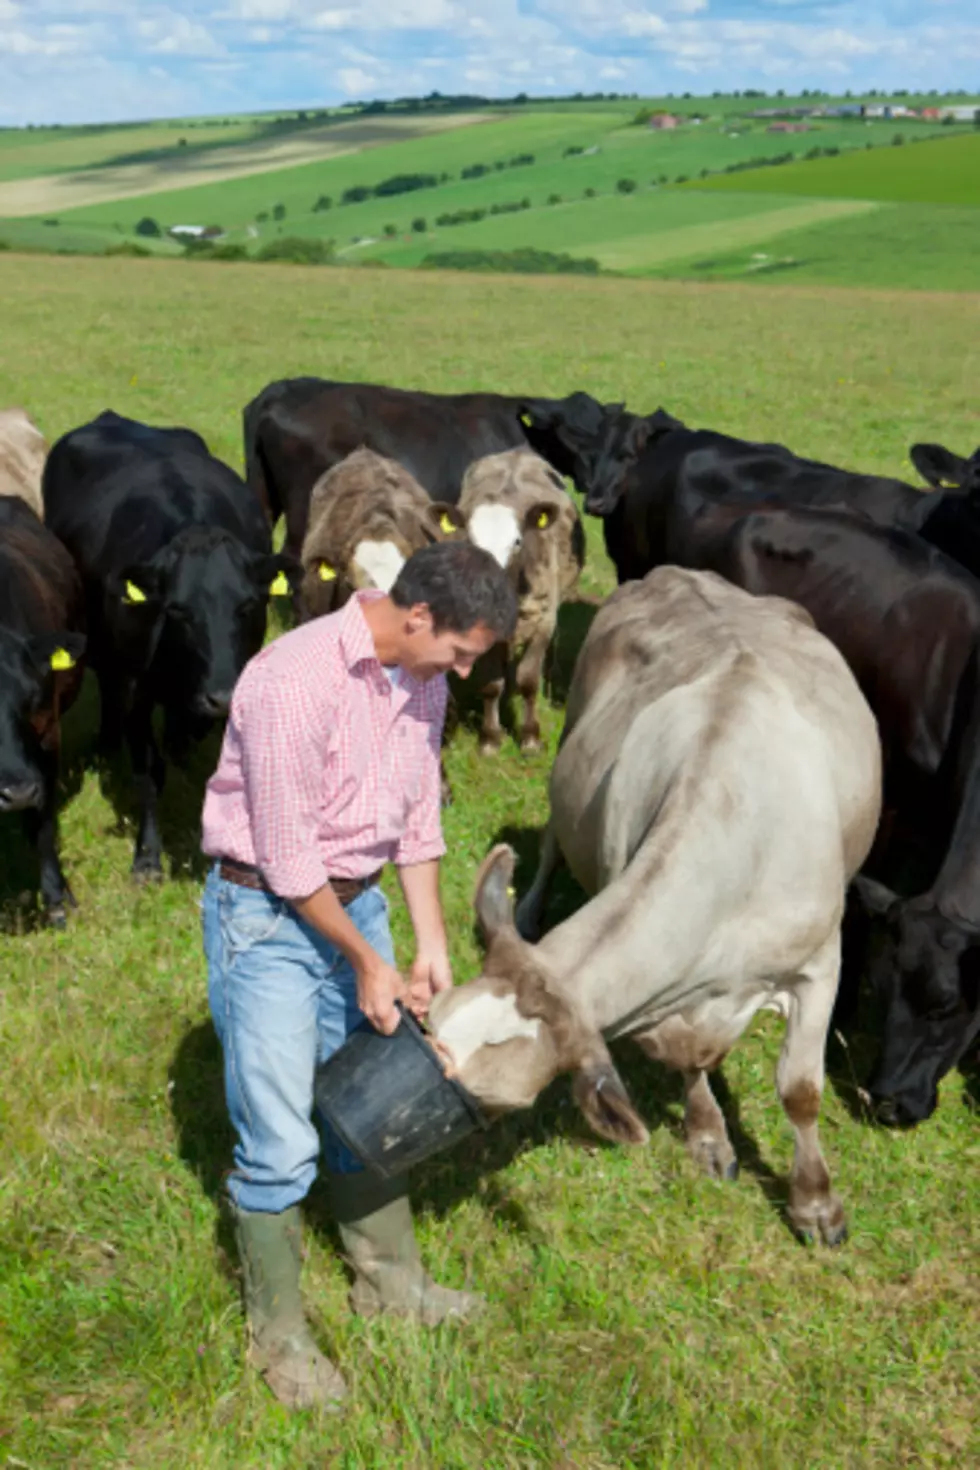 FDA Aims To Cut Use Of Antibiotics In Livestock